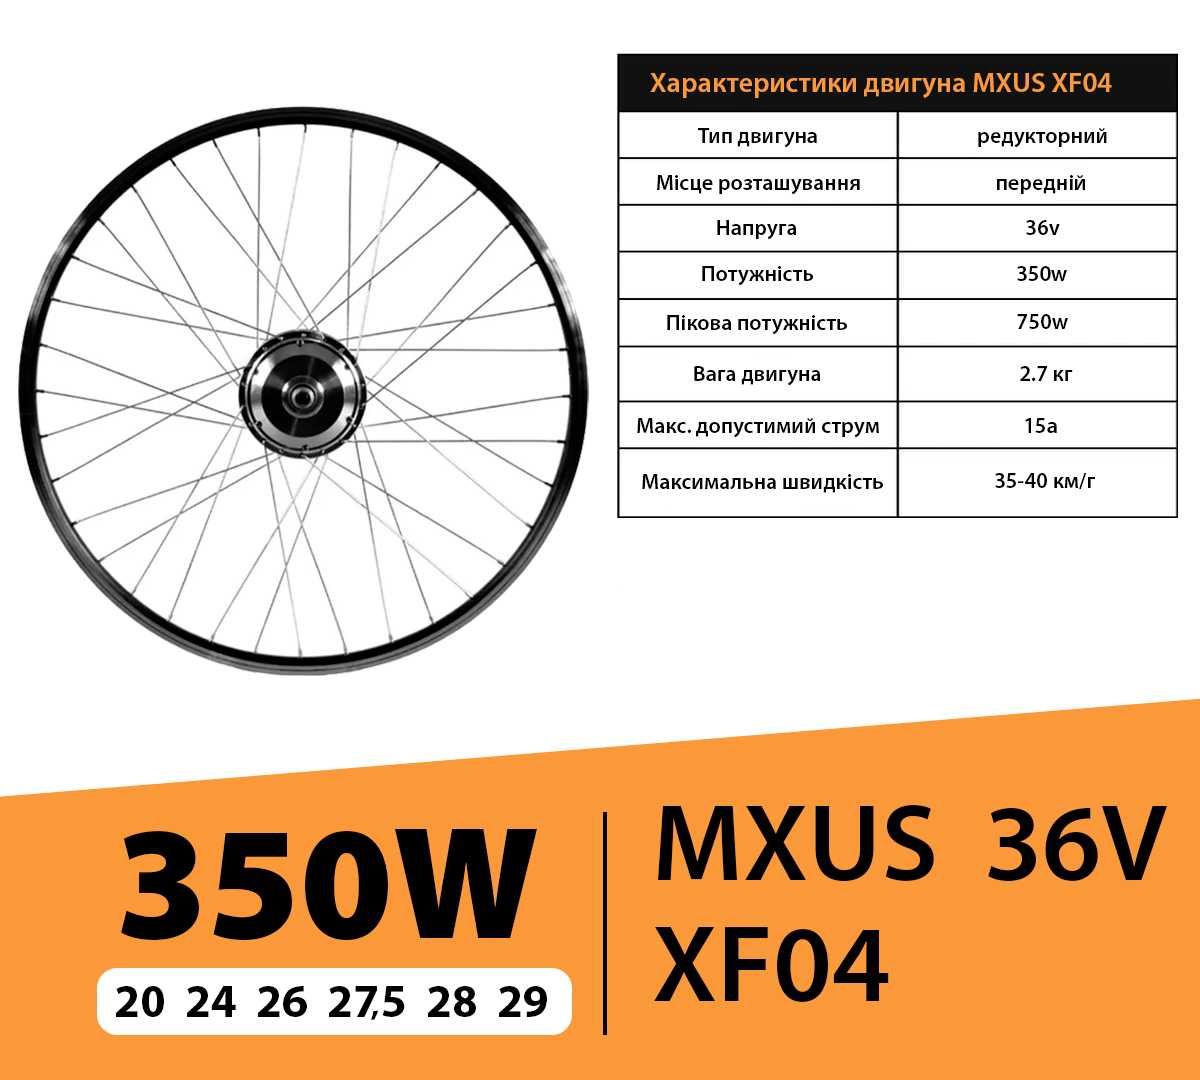 MXUS! ПОЛНЫЙ 10ah редукторный электронабор для велосипеда,электронабор